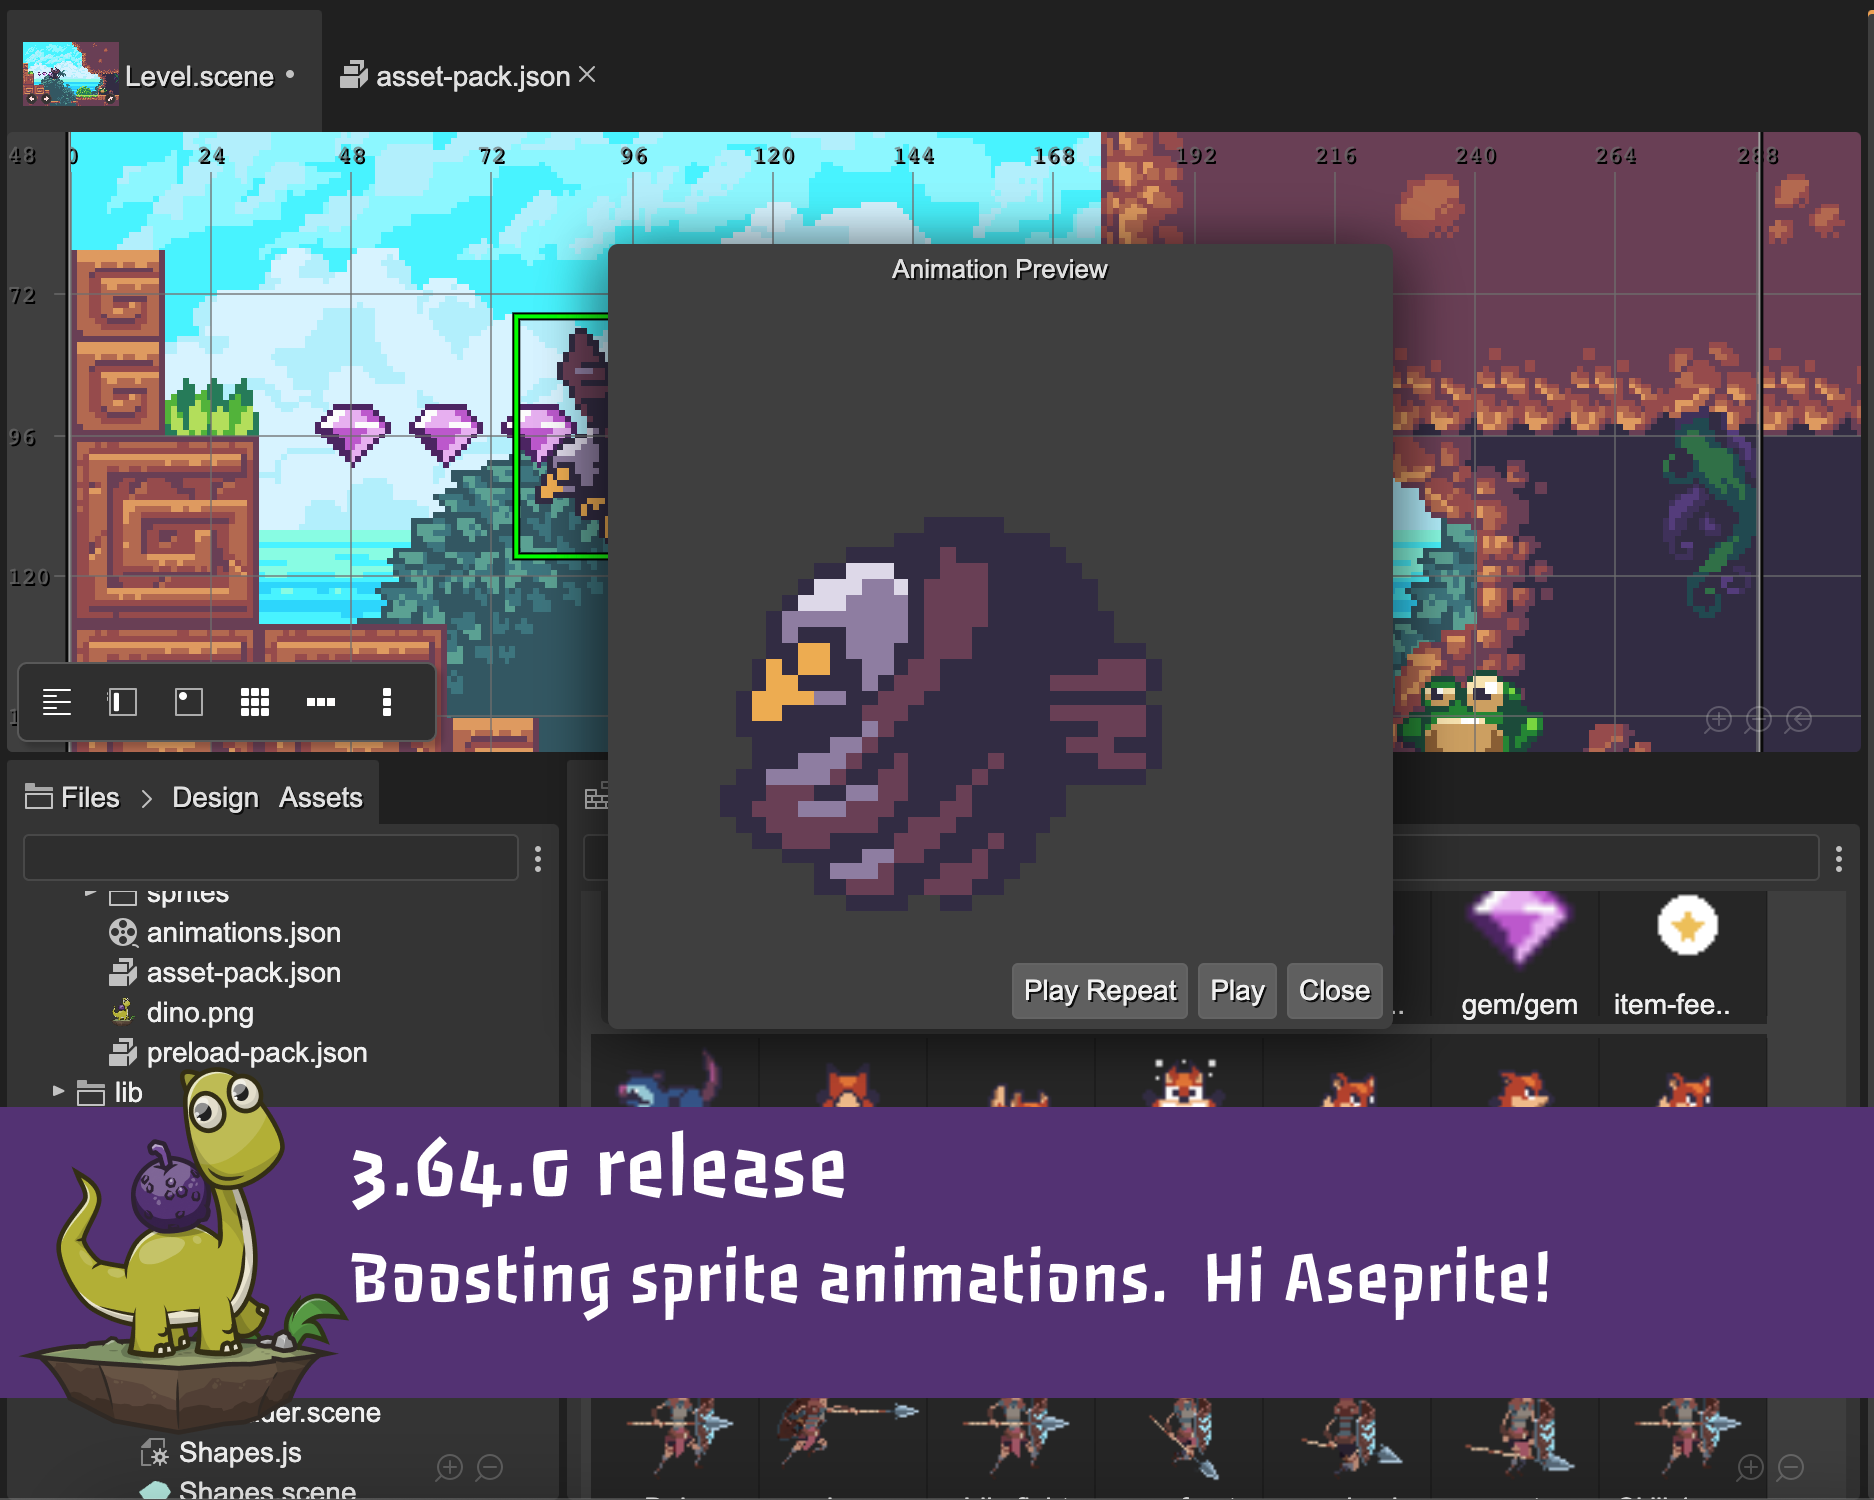 Phaser Editor 2D v3.64.0 released - Boosting sprite animations - Hi Aseprite!